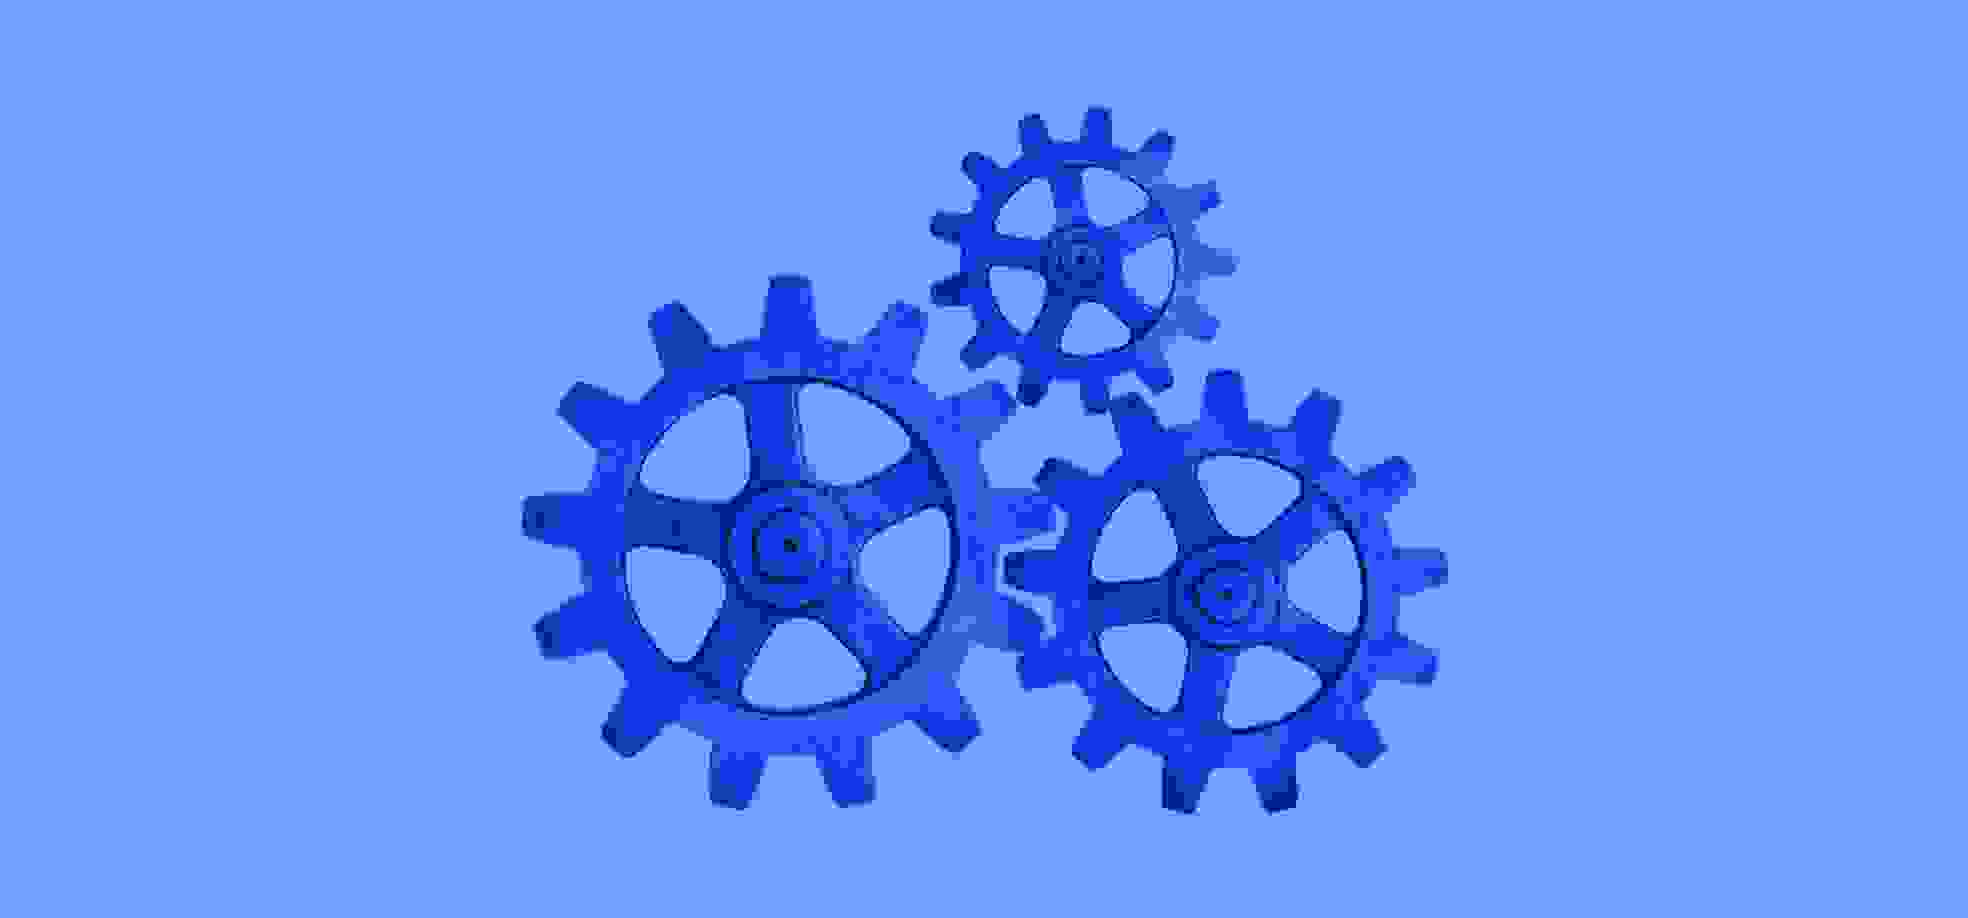 un icono de engranaje azul sobre un fondo azul